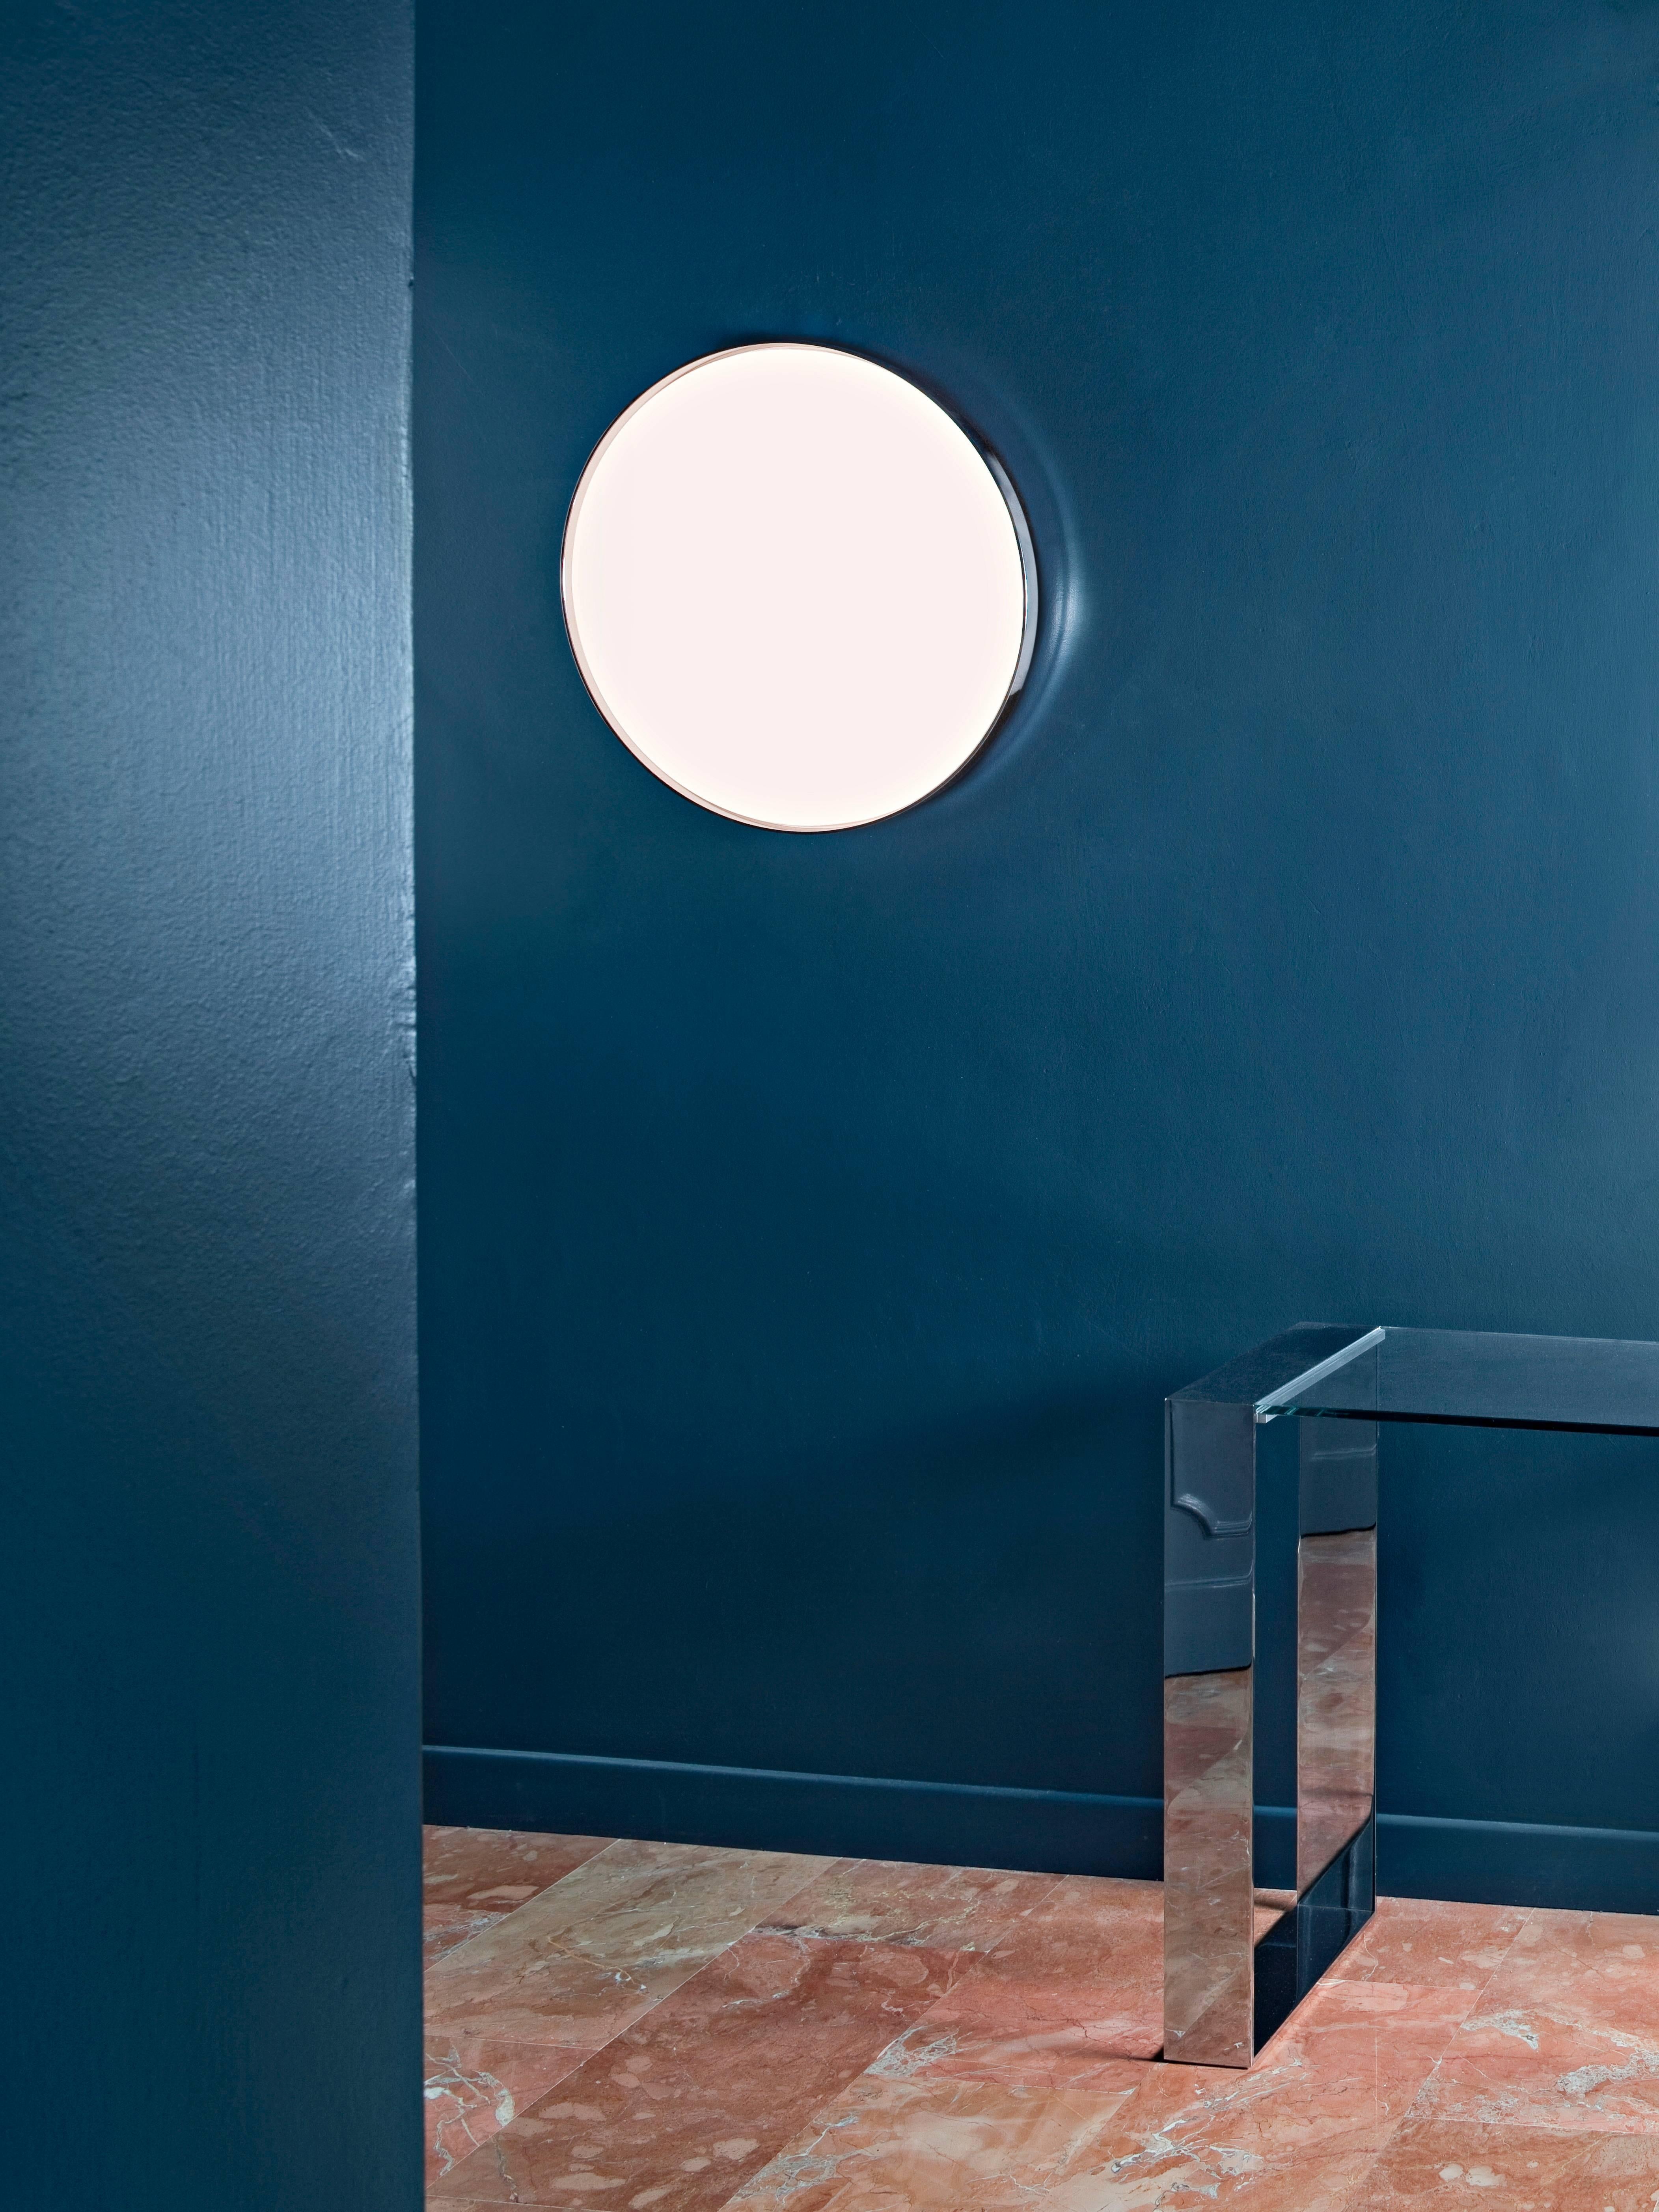 So einfach, und doch so brillant: Die Leuchte Clara von Piero Lissoni ist ein hervorragendes Beispiel für den minimalistischen Stil des Künstlers und die intelligente Verwendung von Materialien. Der Frontdiffusor ist aus hocheffizientem,